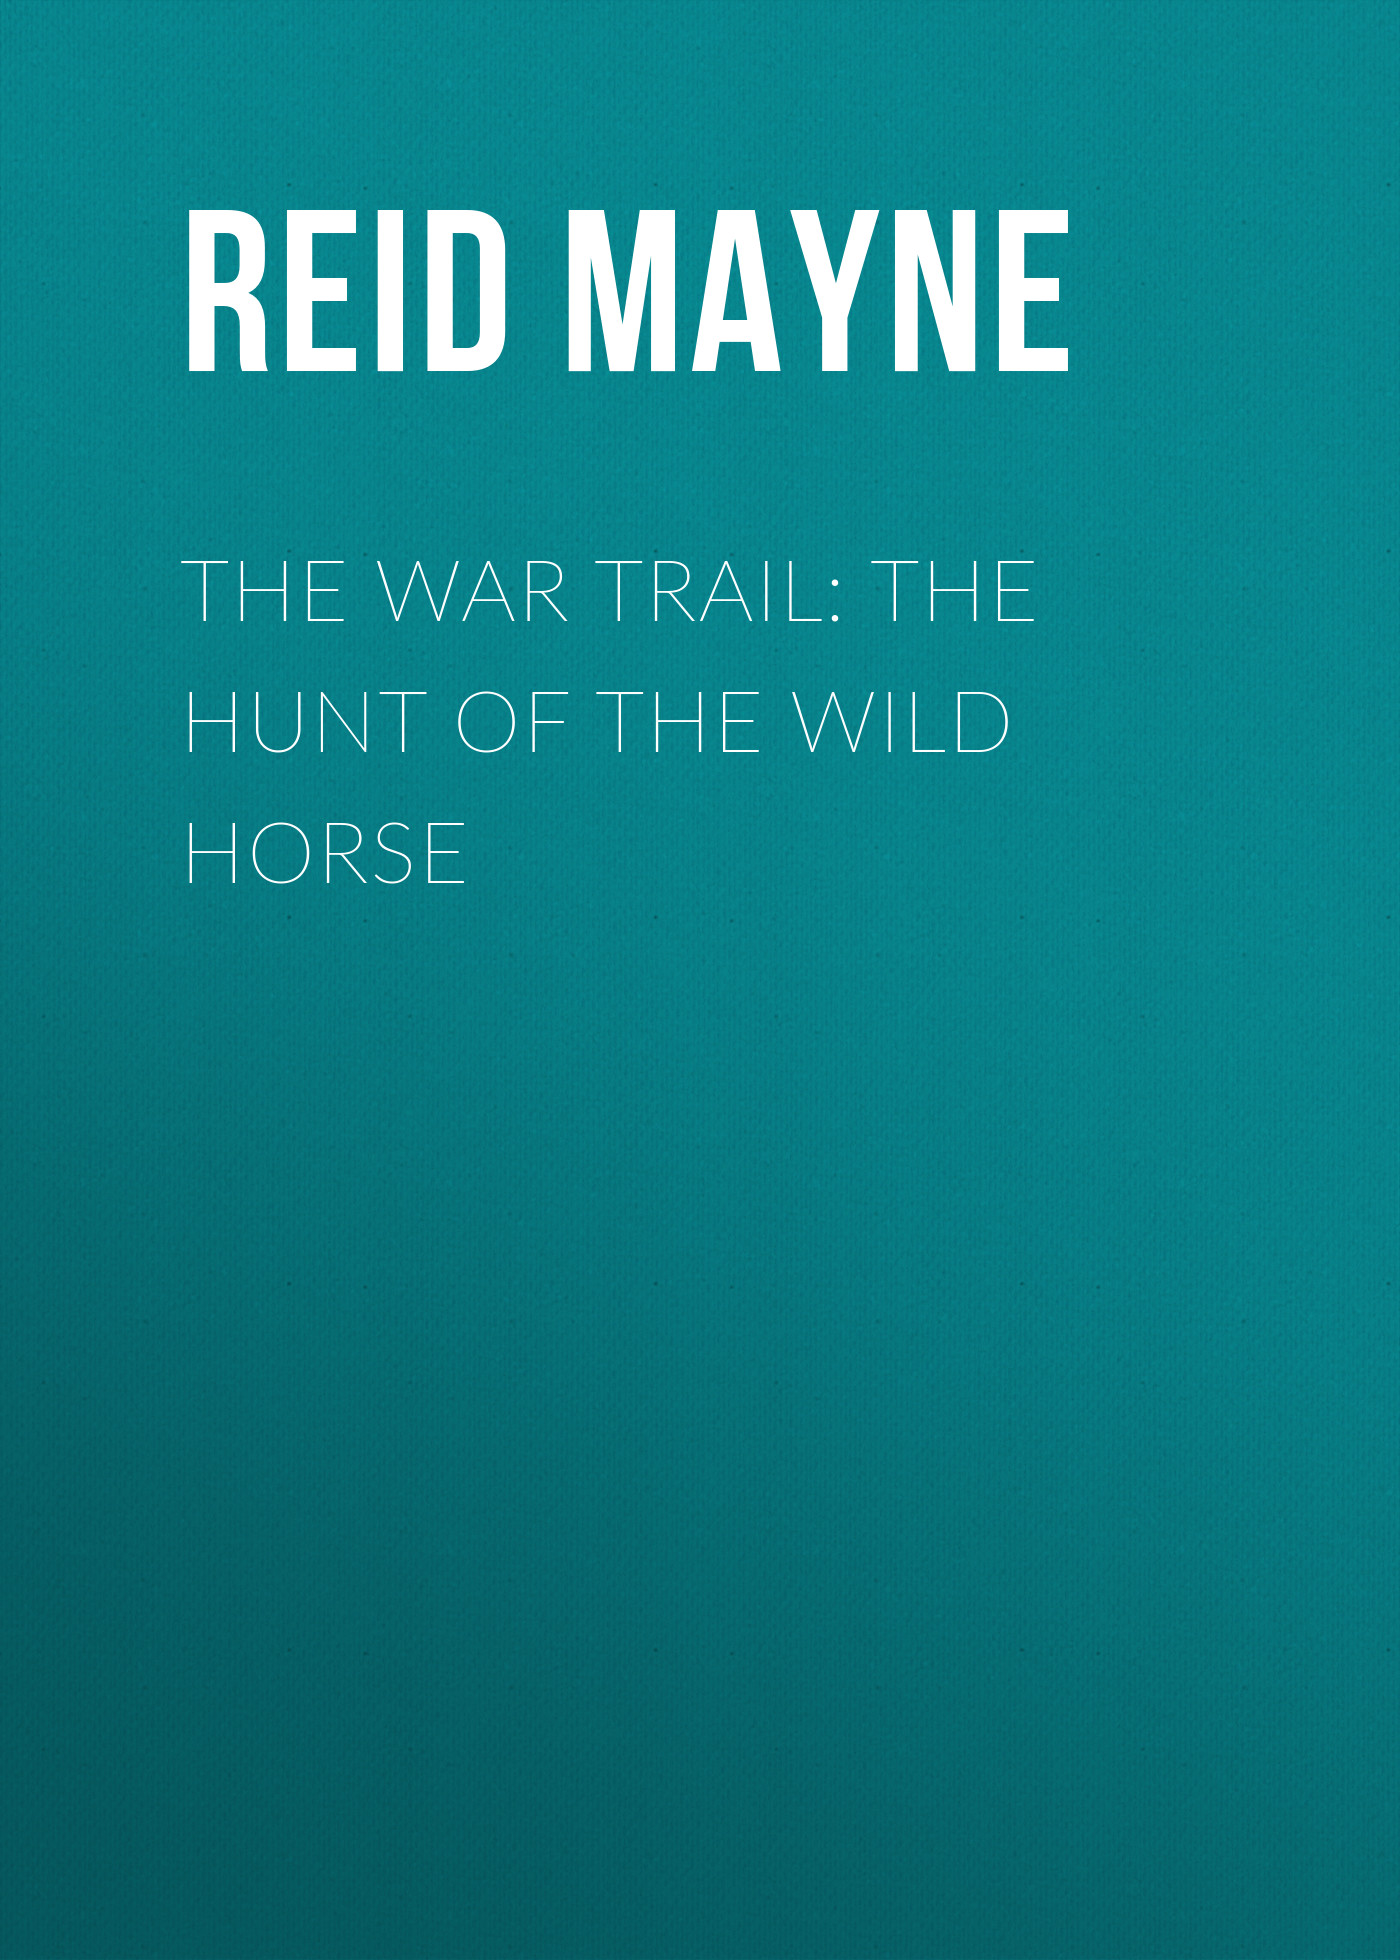 Книга The War Trail: The Hunt of the Wild Horse из серии , созданная Mayne Reid, может относится к жанру Литература 19 века, Зарубежная старинная литература, Зарубежная классика, Зарубежные детские книги. Стоимость электронной книги The War Trail: The Hunt of the Wild Horse с идентификатором 25448292 составляет 0 руб.